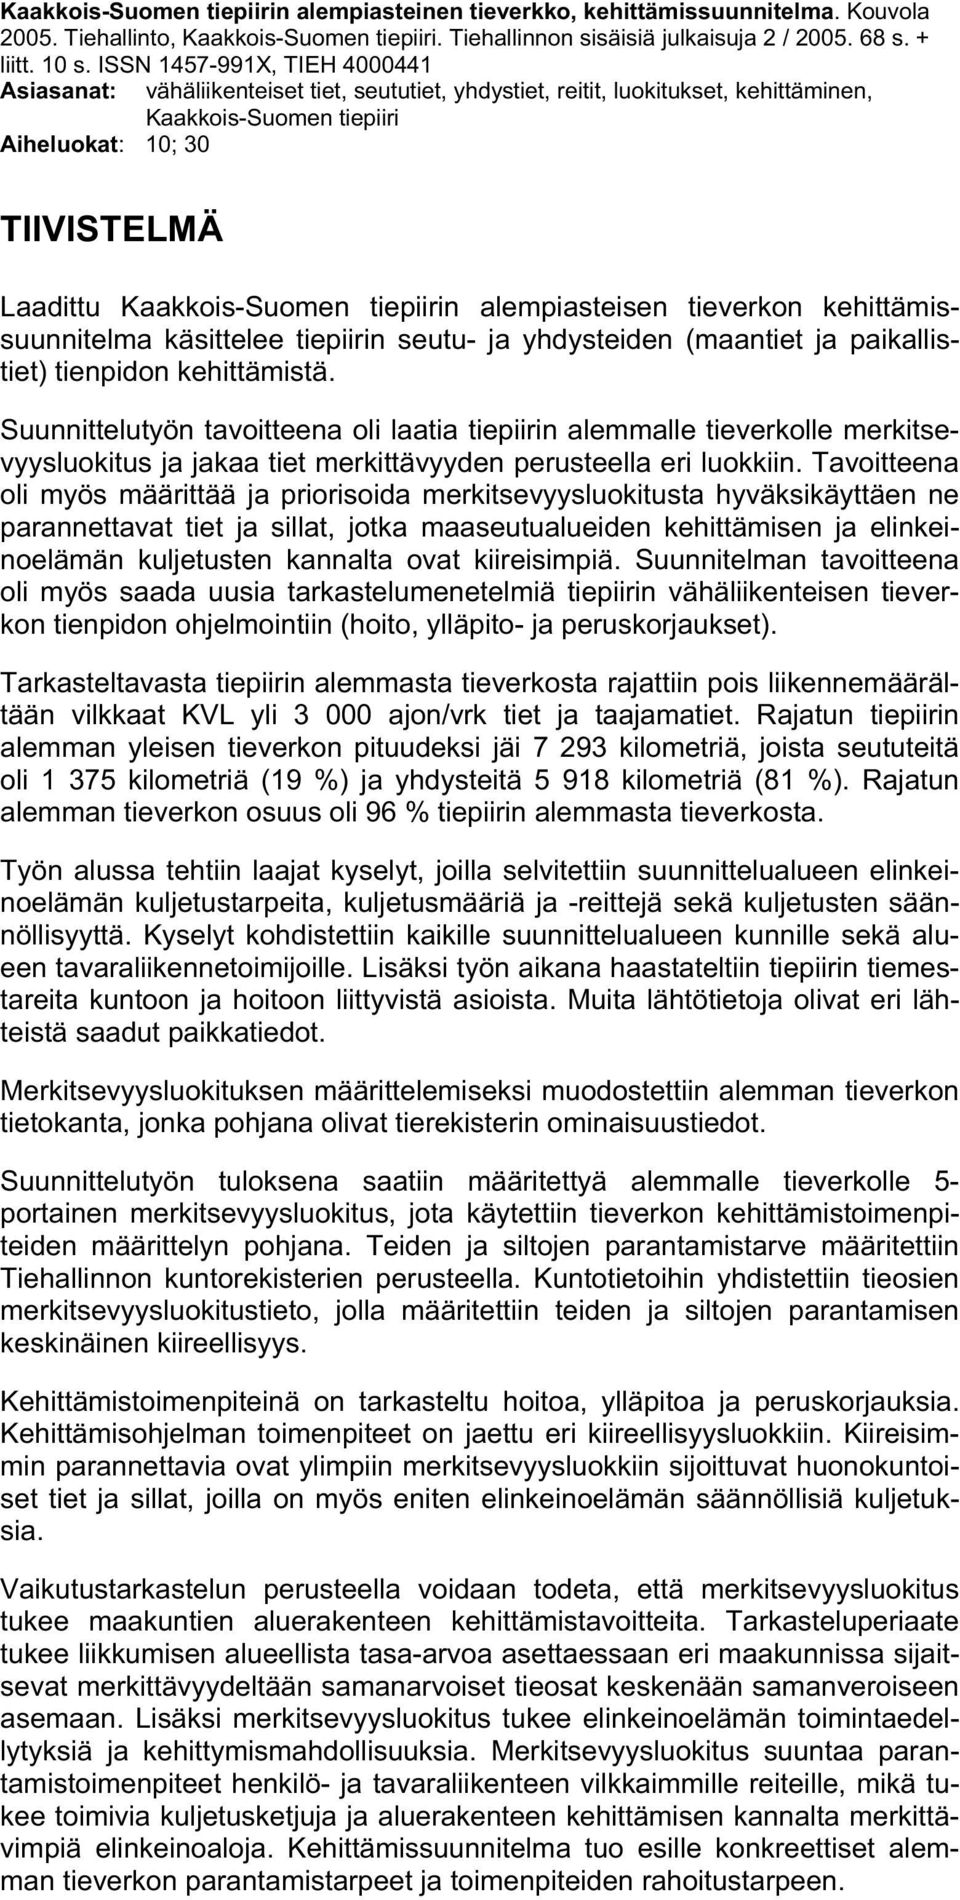 Kaakkois-Suomen tiepiirin alempiasteisen tieverkon kehittämissuunnitelma käsittelee tiepiirin seutu- ja yhdysteiden (maantiet ja paikallistiet) tienpidon kehittämistä.